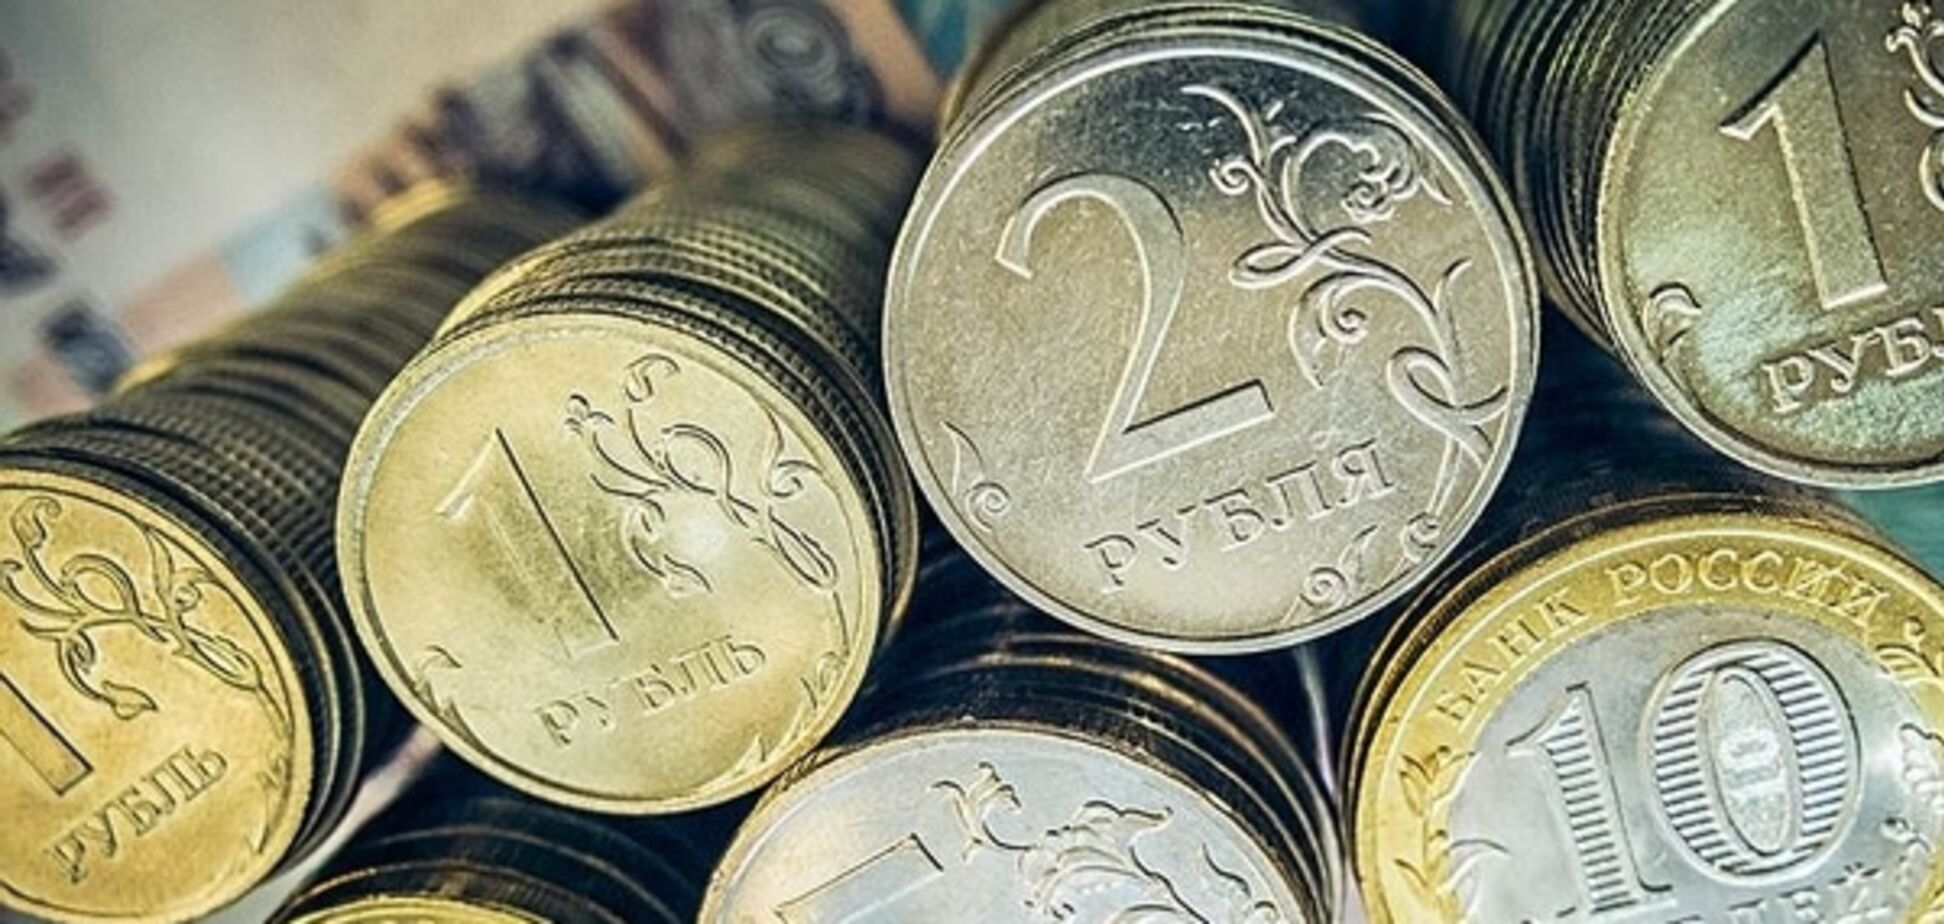 Перемирие в зоне АТО решает участь рубля — банкир